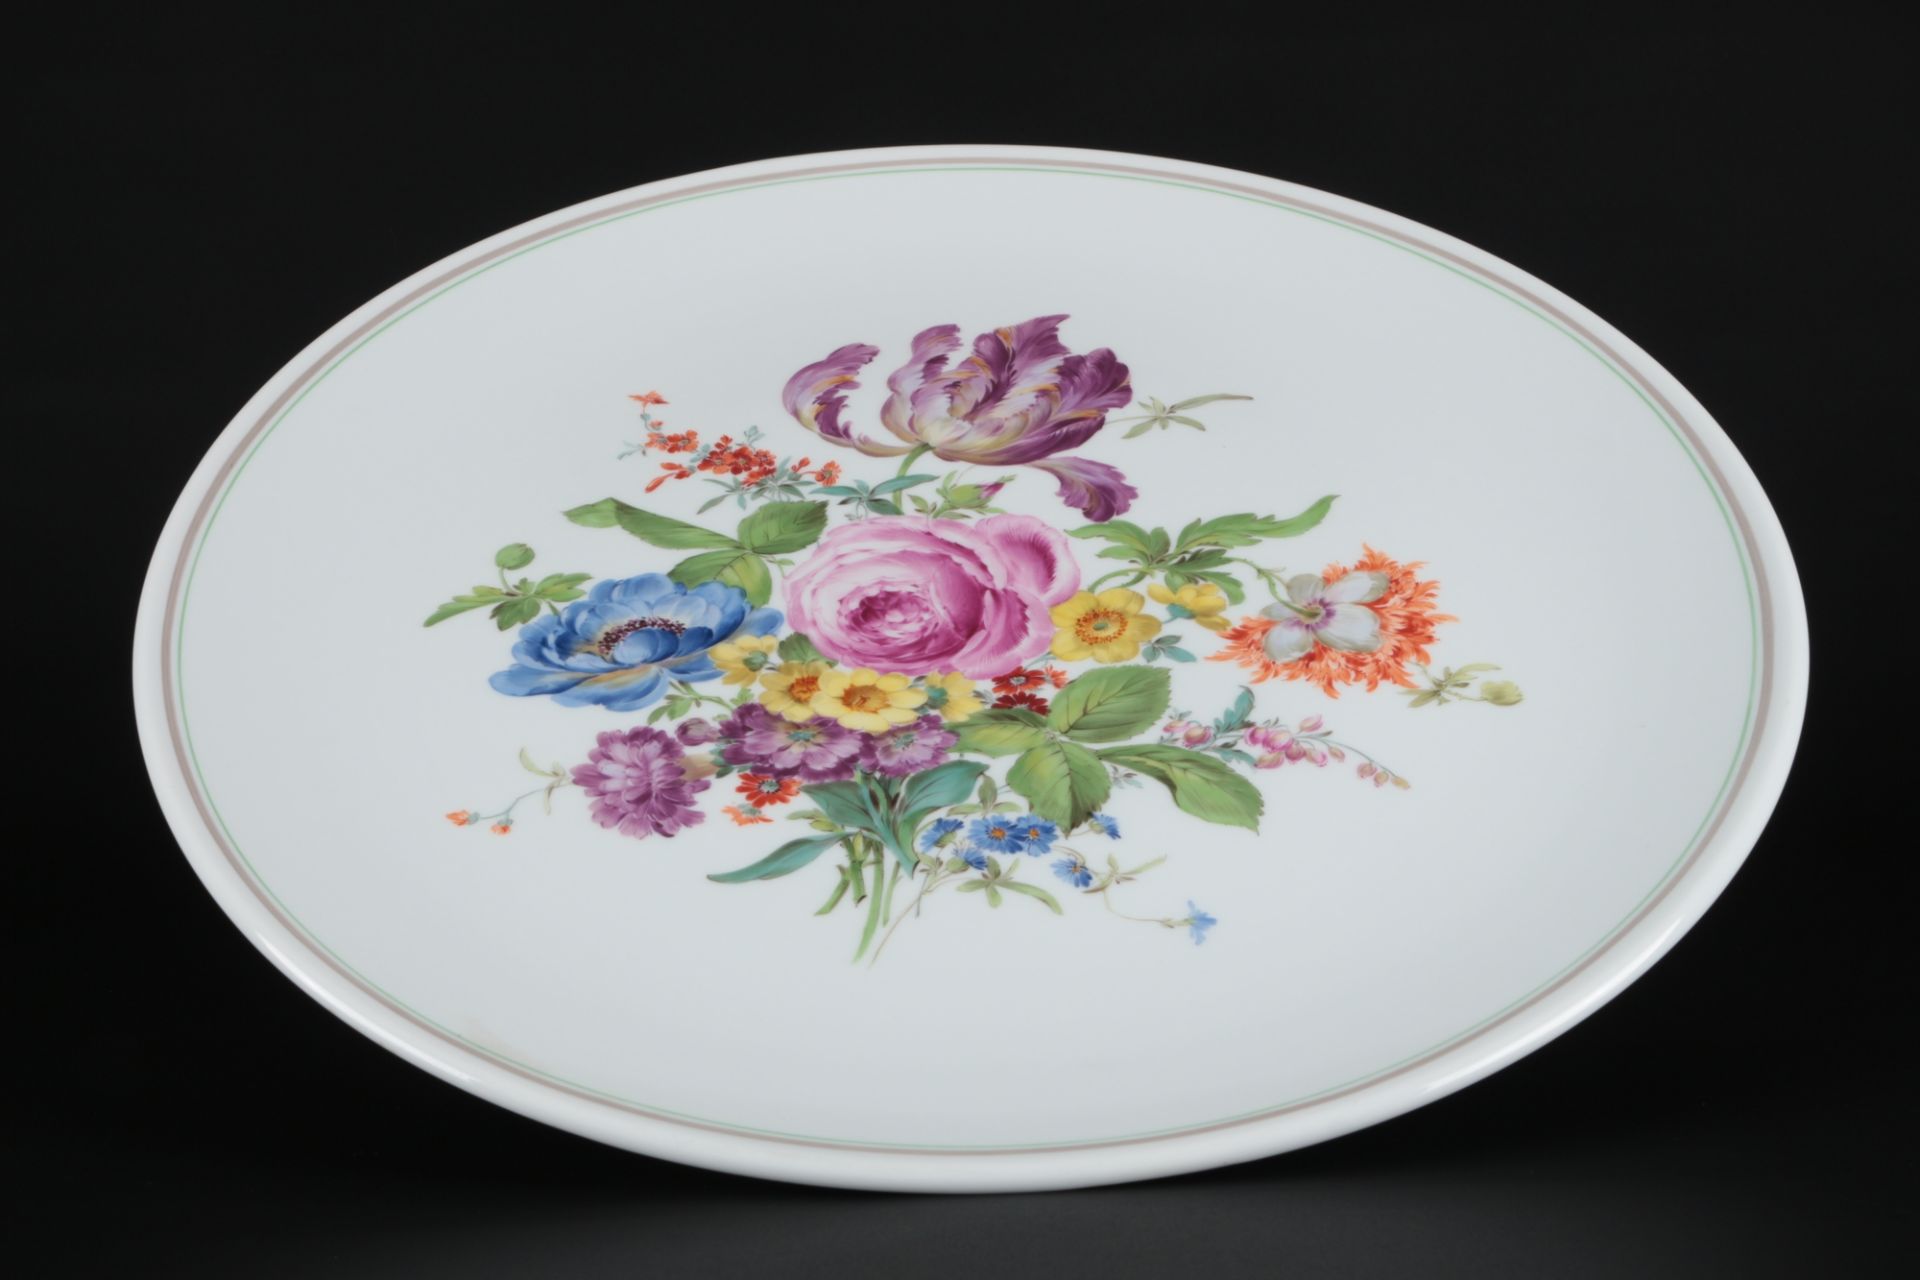 Meissen Blumenbukett riesige Platte 43cm 1.Wahl, large round dish, - Bild 2 aus 3